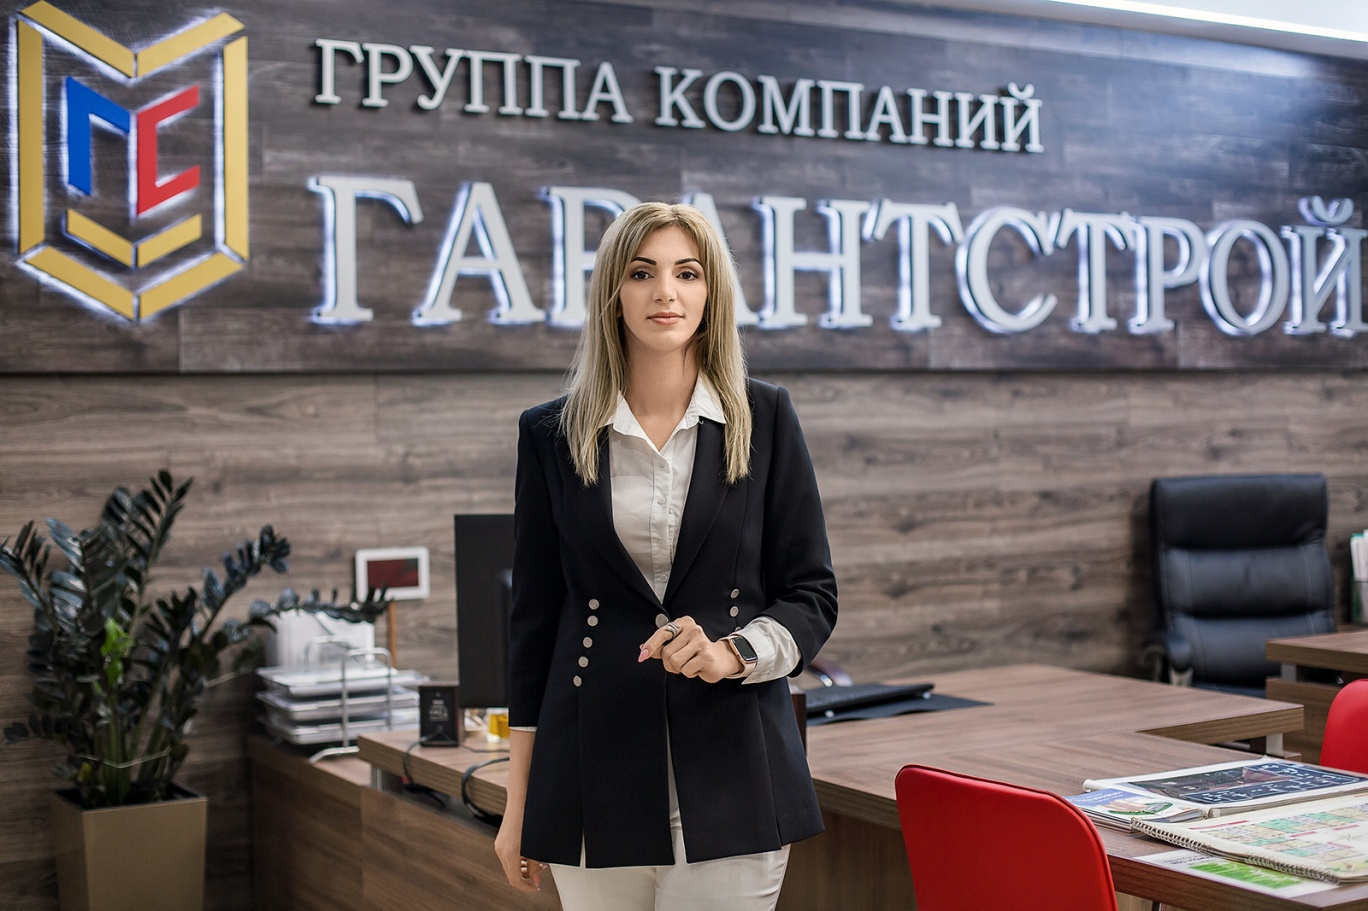 Кристина Слонина возглавляет строительную компанию